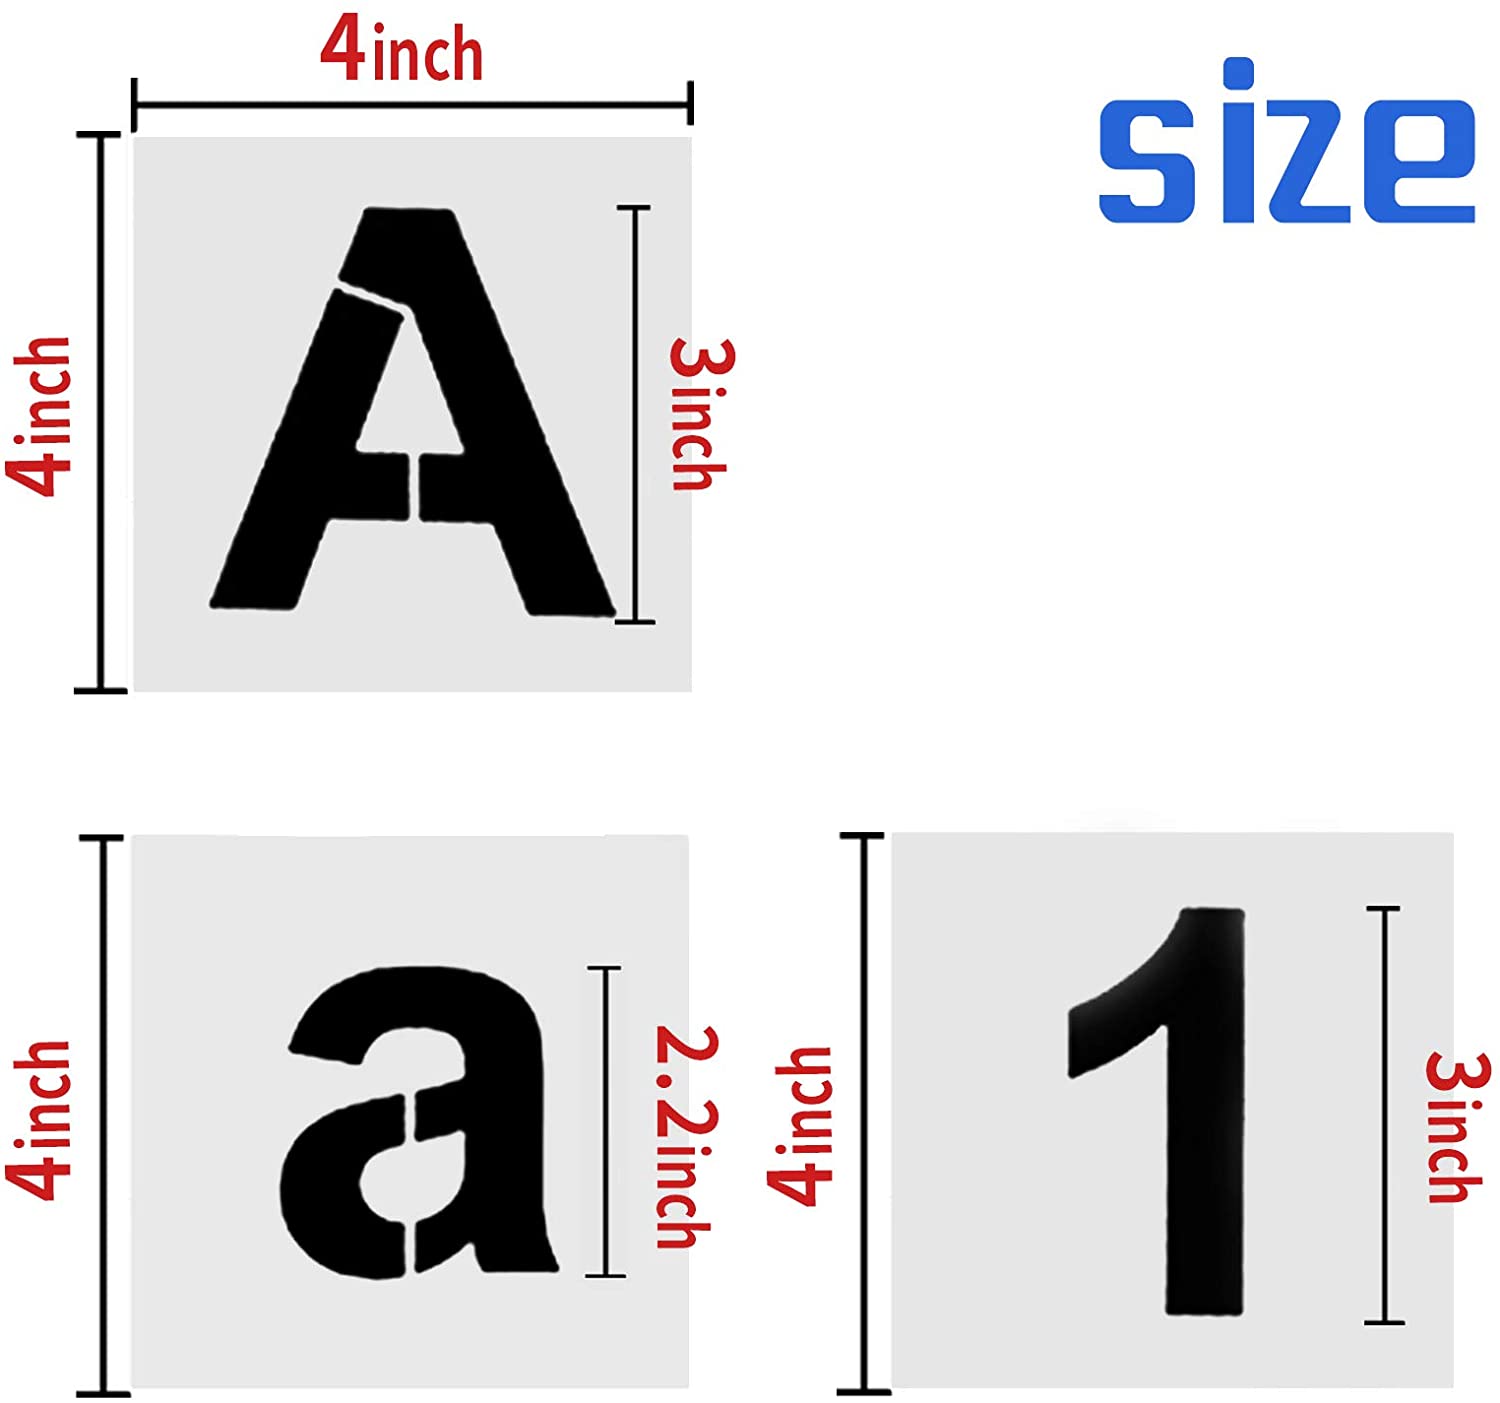 Plantillas de letras de 3.0 in, 62 plantillas de números de letra gran